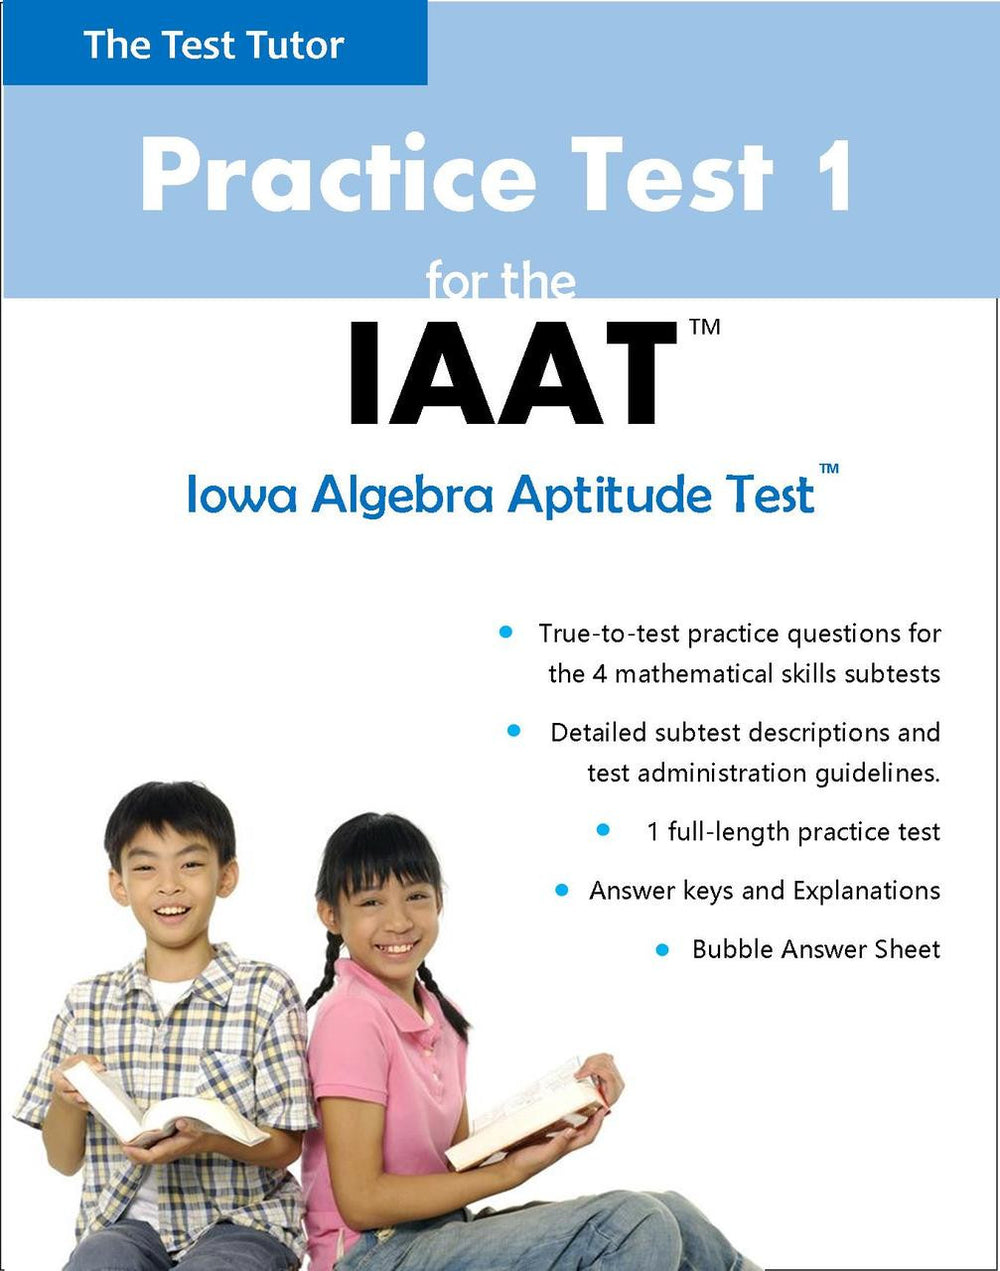 iowa-algebra-aptitude-test-iaat-practice-test-tagged-iaat-the-test-tutor